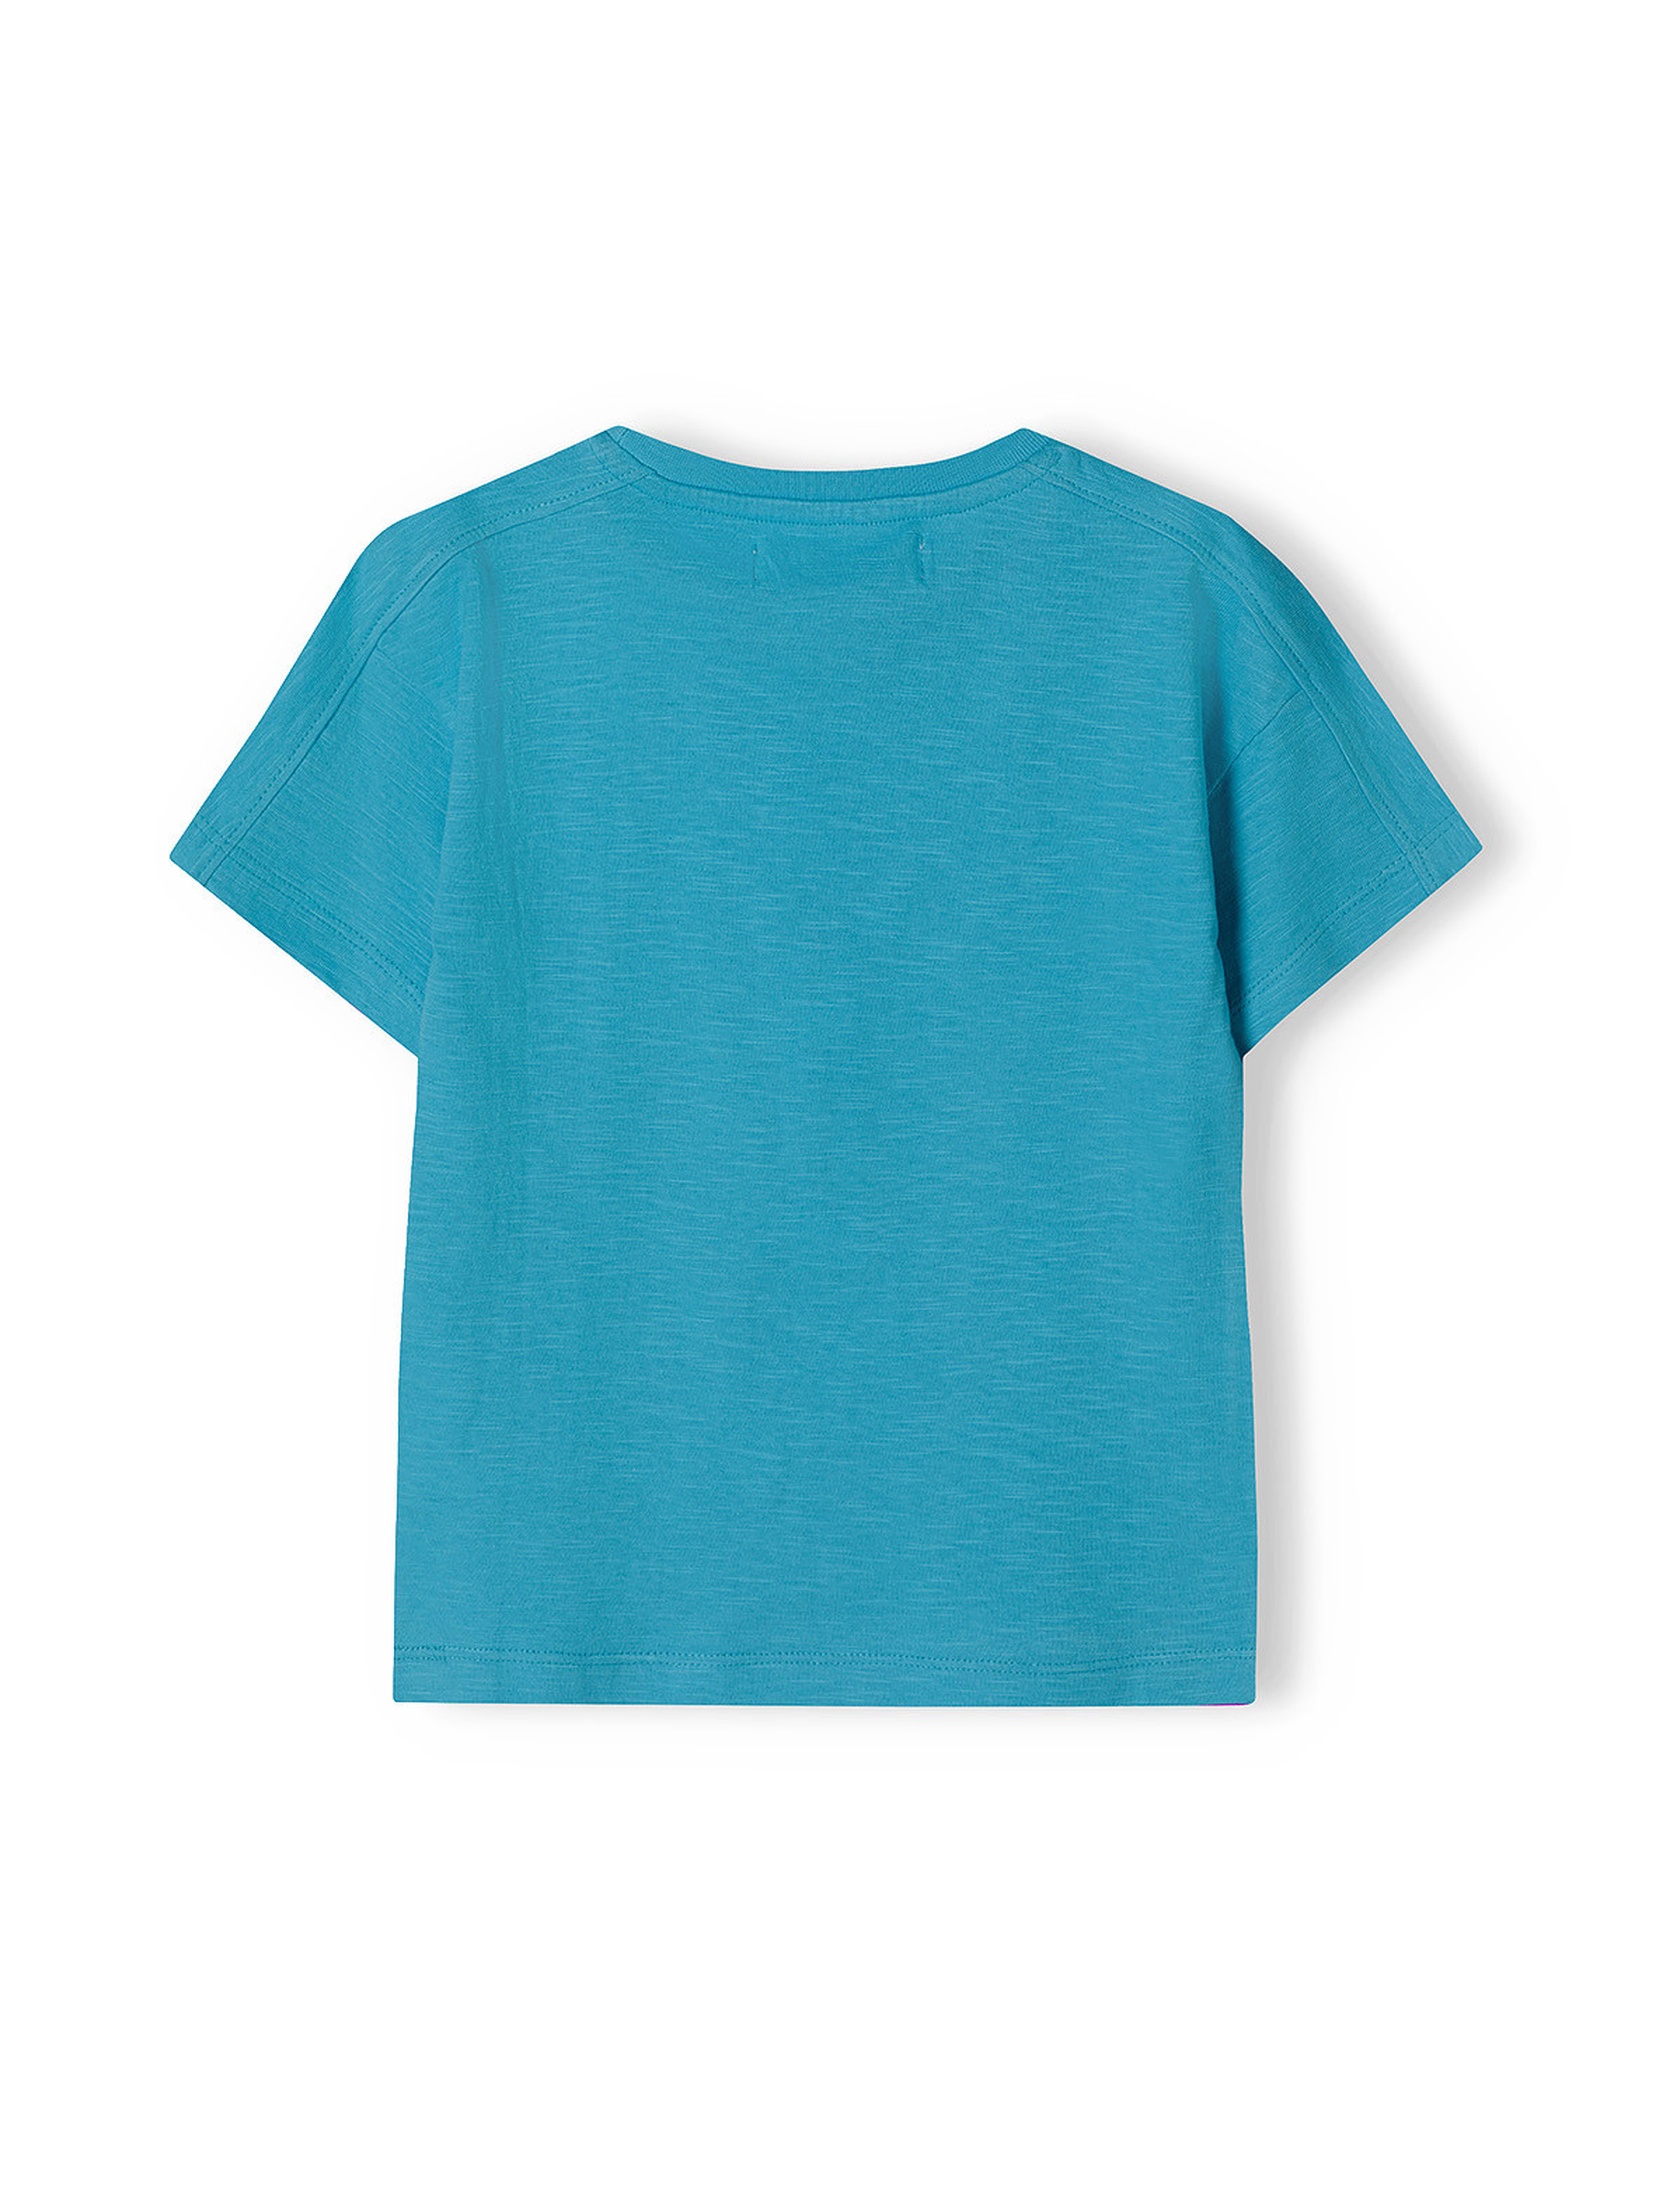 Niebieski t-shirt bawełniany dla chłopca z nadrukiem